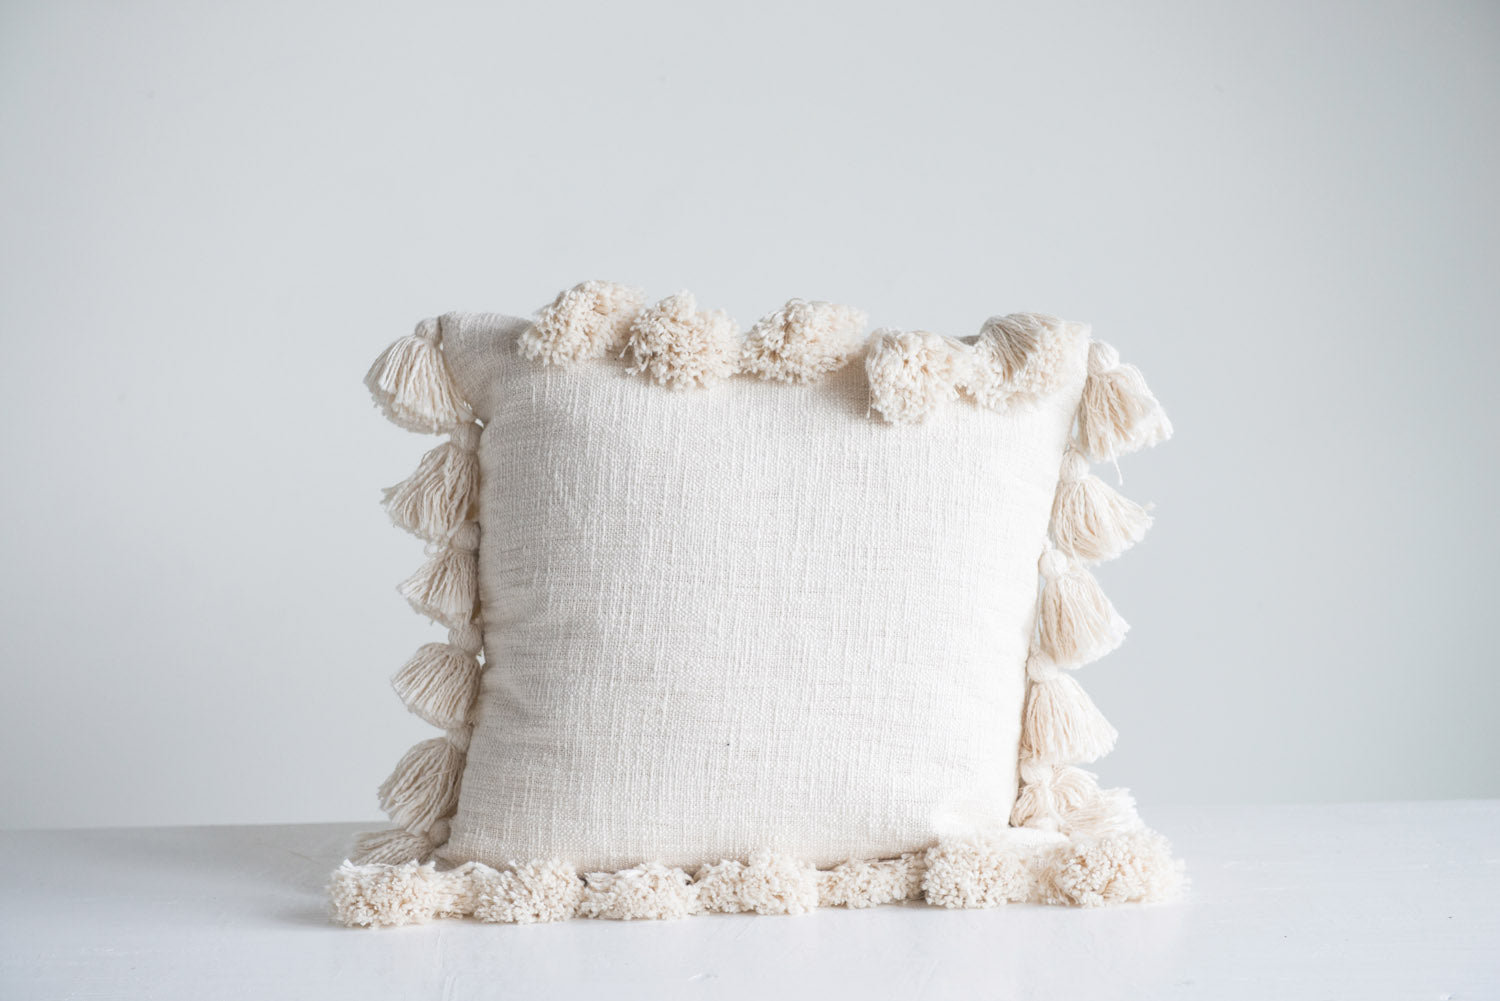 18" Square Woven Cotton Slub Pillow w/ Tassels, Cream Color